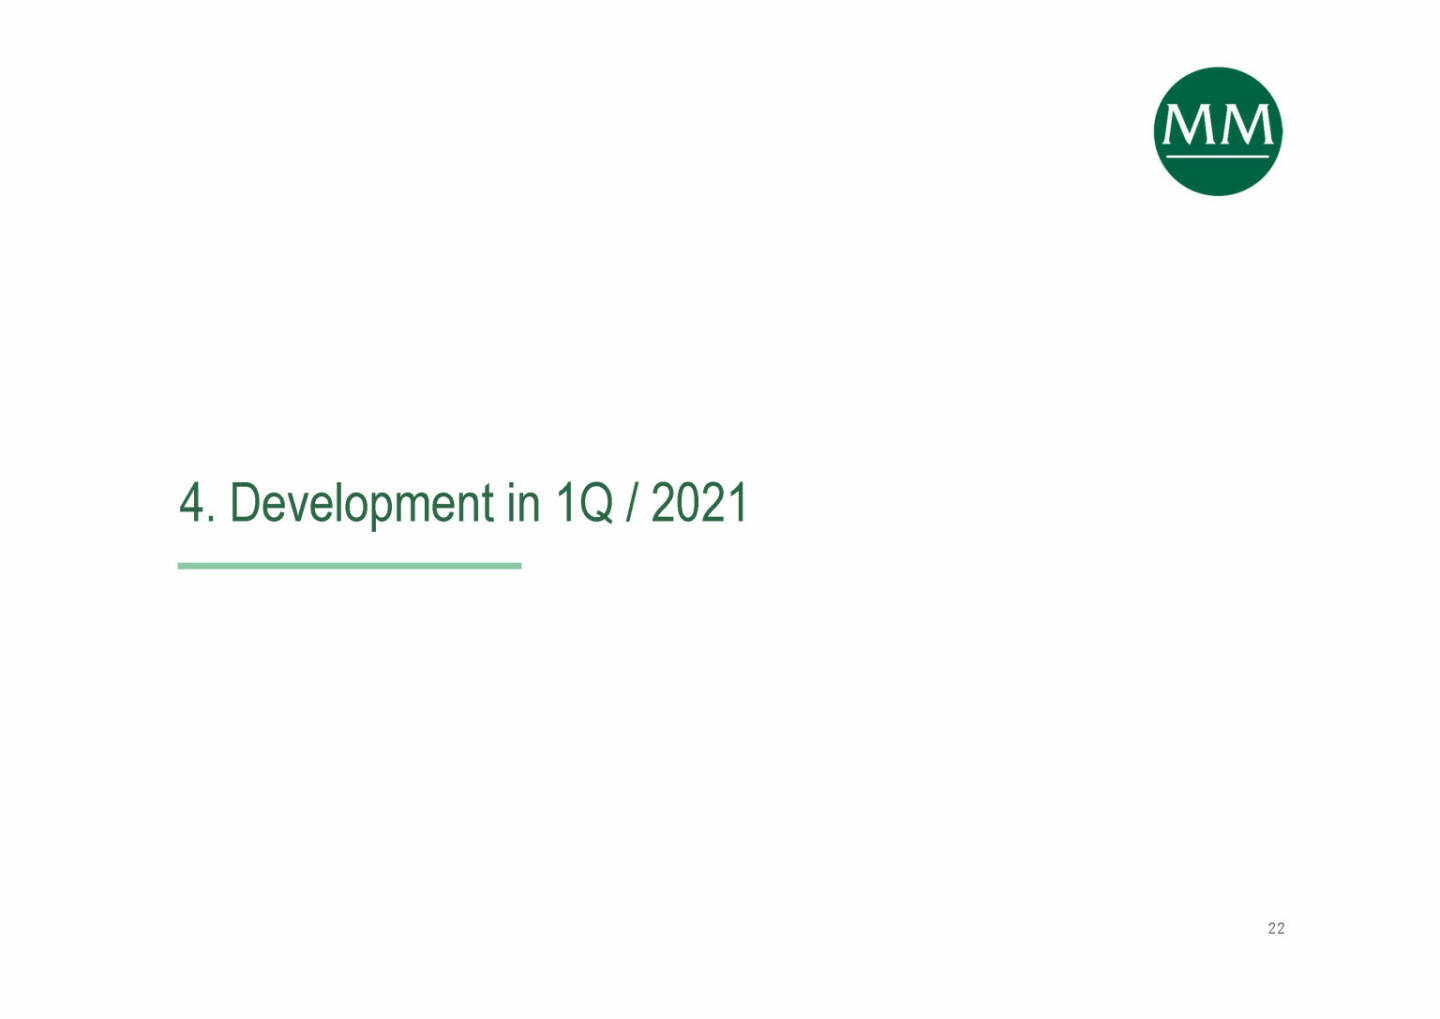 Mayr-Melnhof - Development in 1Q / 2021